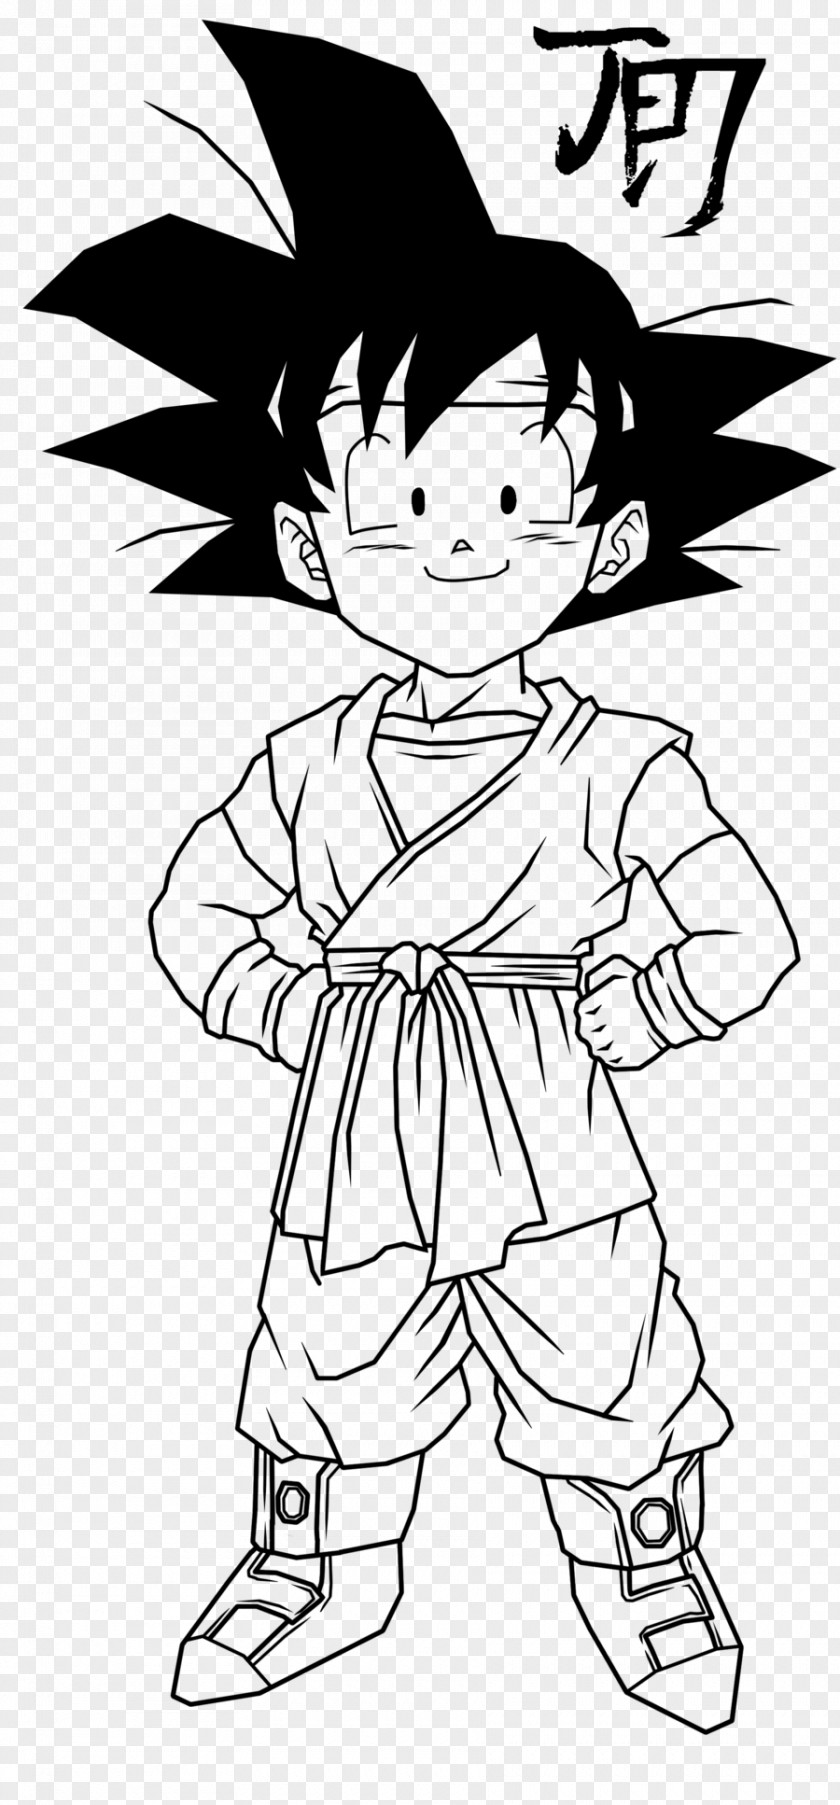 Lineart Vector Goku Master Roshi Drawing Line Art Dragon Ball PNG